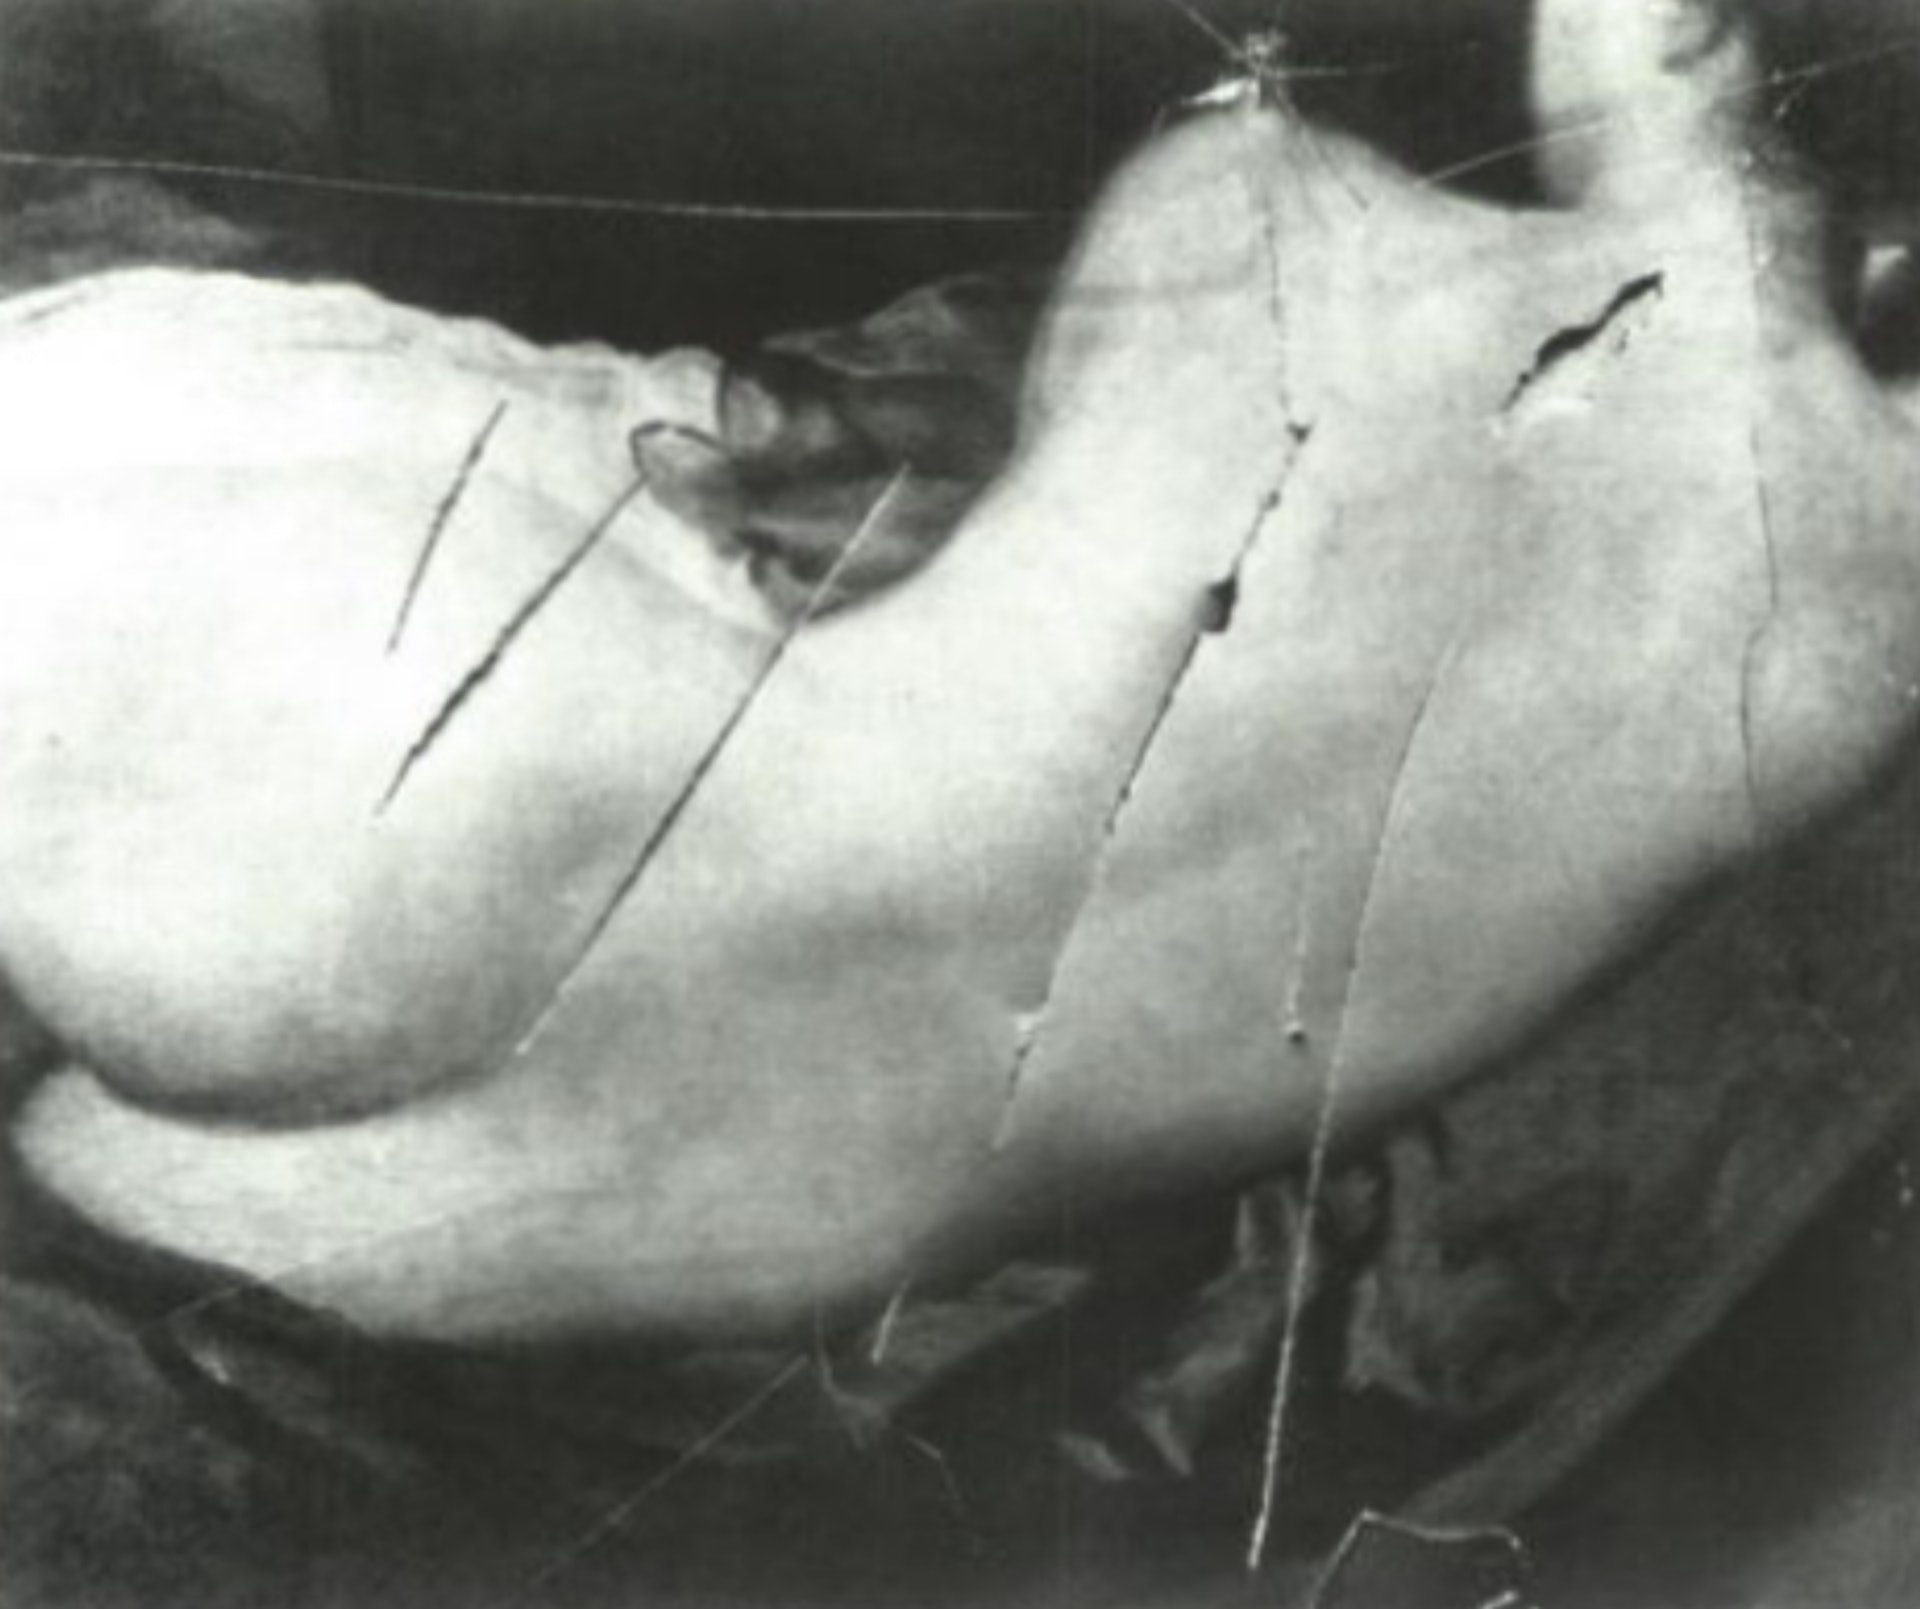 西班牙畫家迪亞哥創作的《鏡前的維納斯》被一名極端女性權利主義者手持殺豬刀，在背上連劃七刀，宣稱「要毀了史上最美麗的女人，以紀念現代史上最美麗的女人潘克斯特太太」。（The National Gallery）